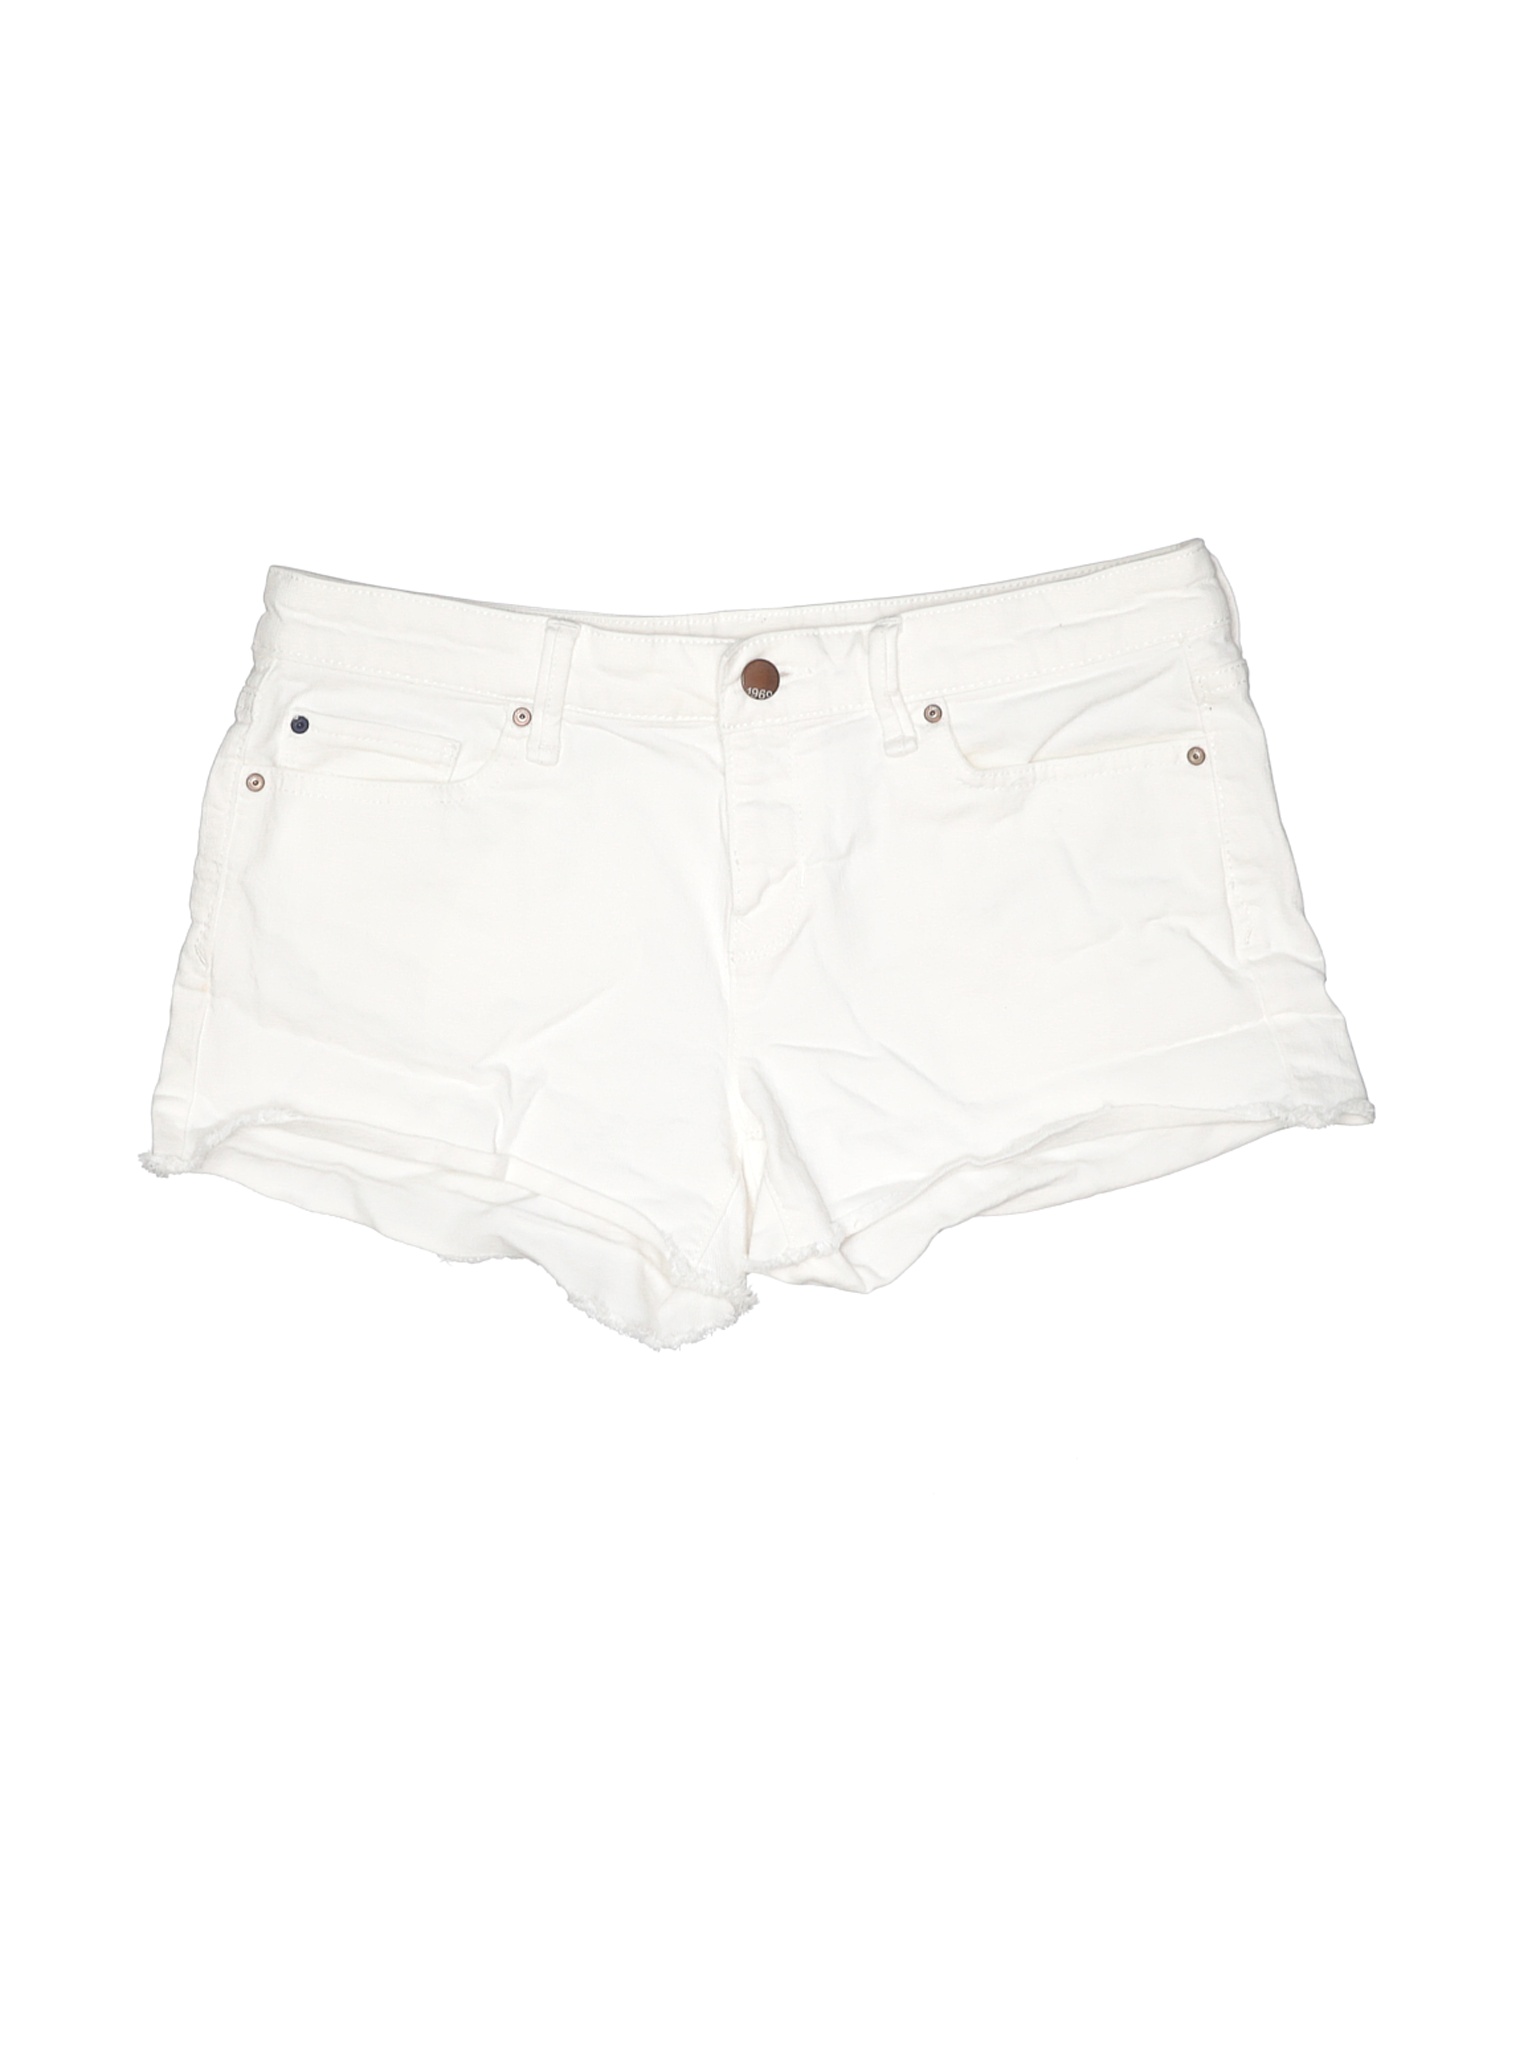 Gap Women White Denim Shorts 27W | eBay